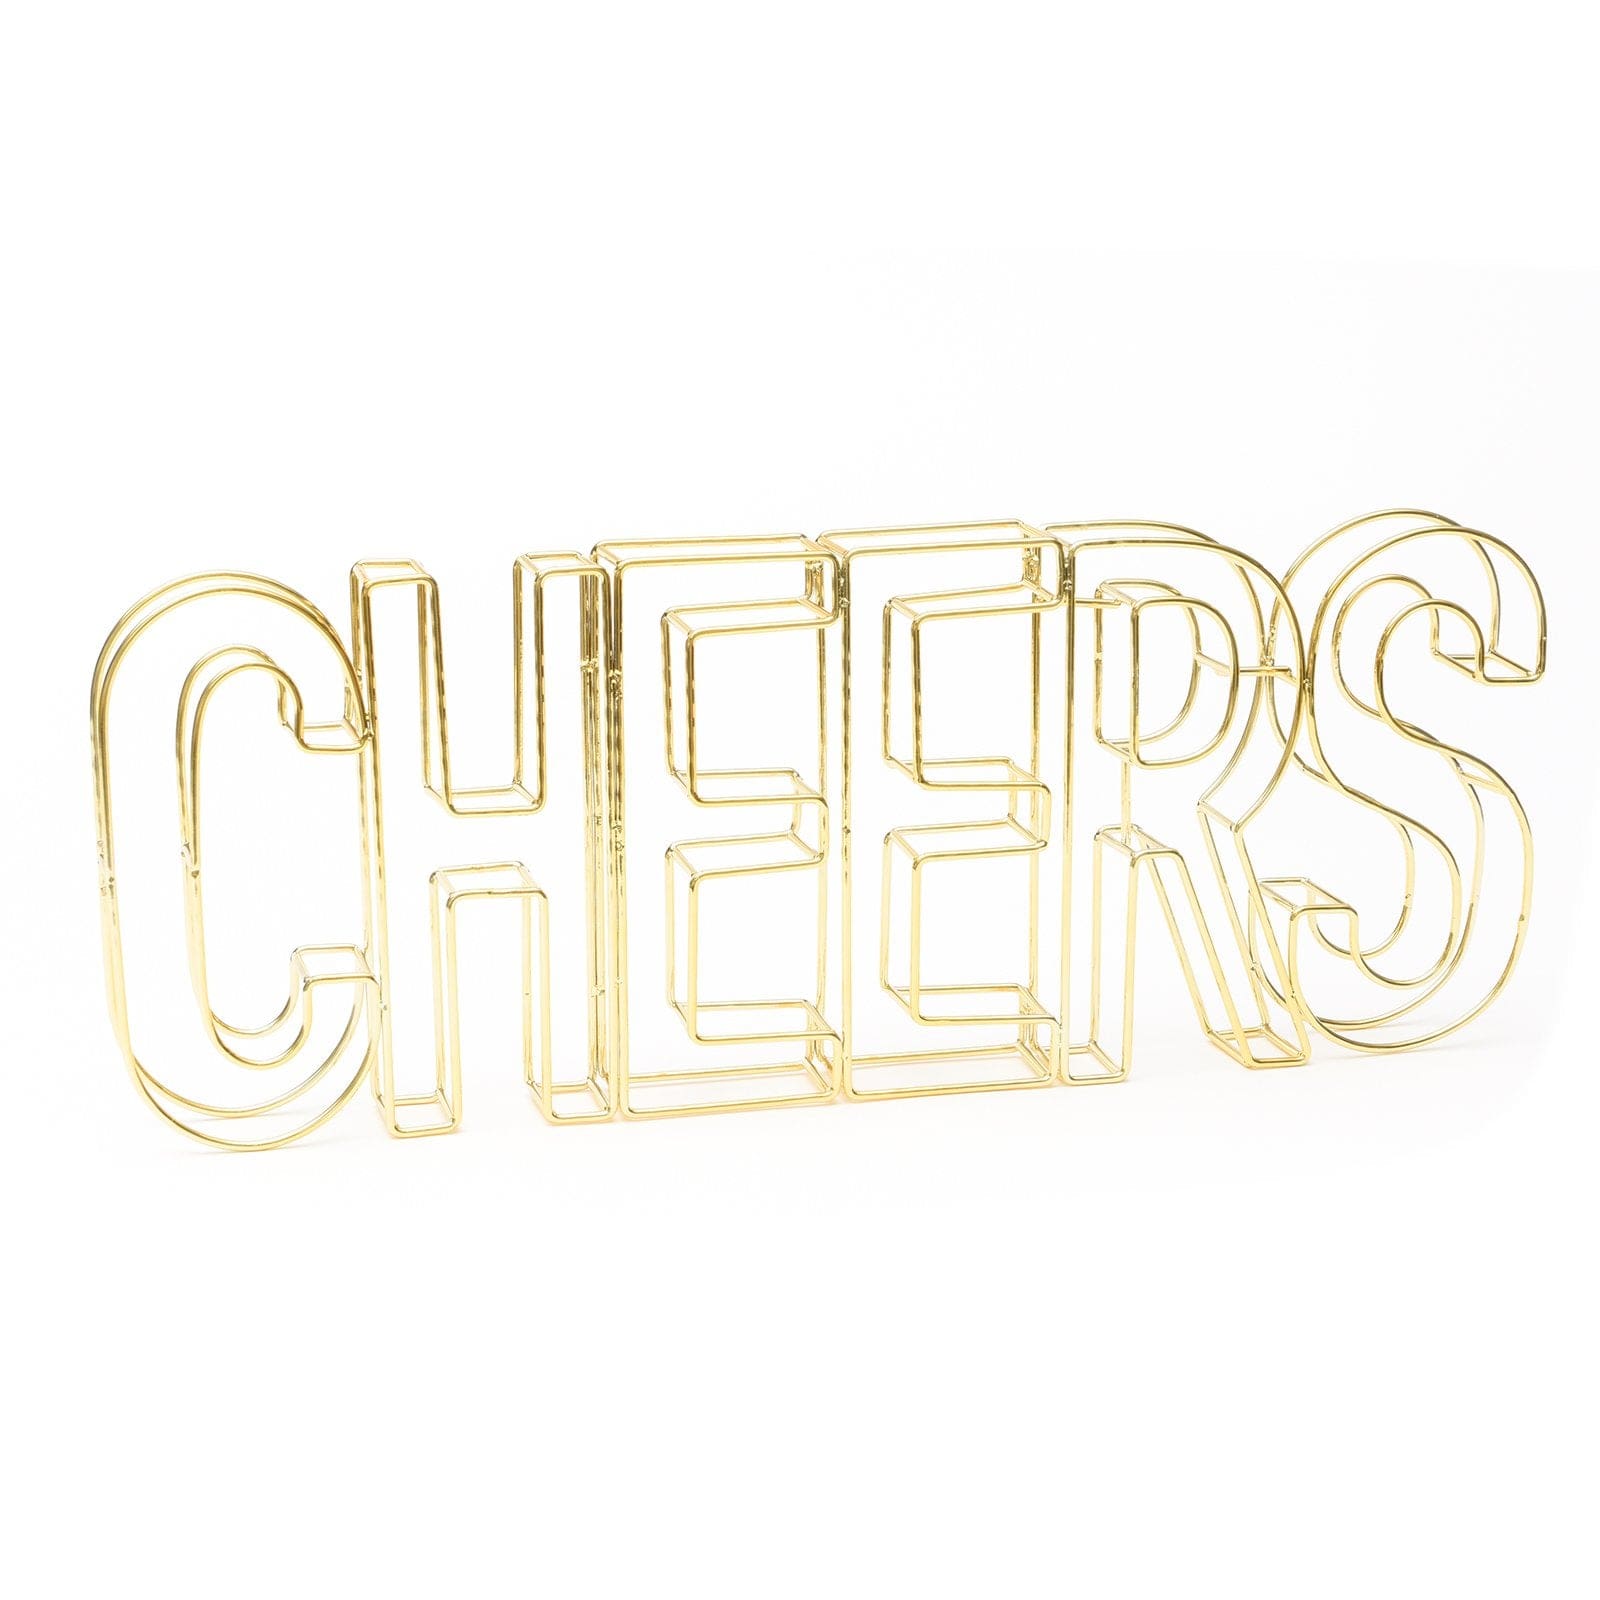 Gold Wire 'Cheers' Sign Gartner Studios Decor Set 47811